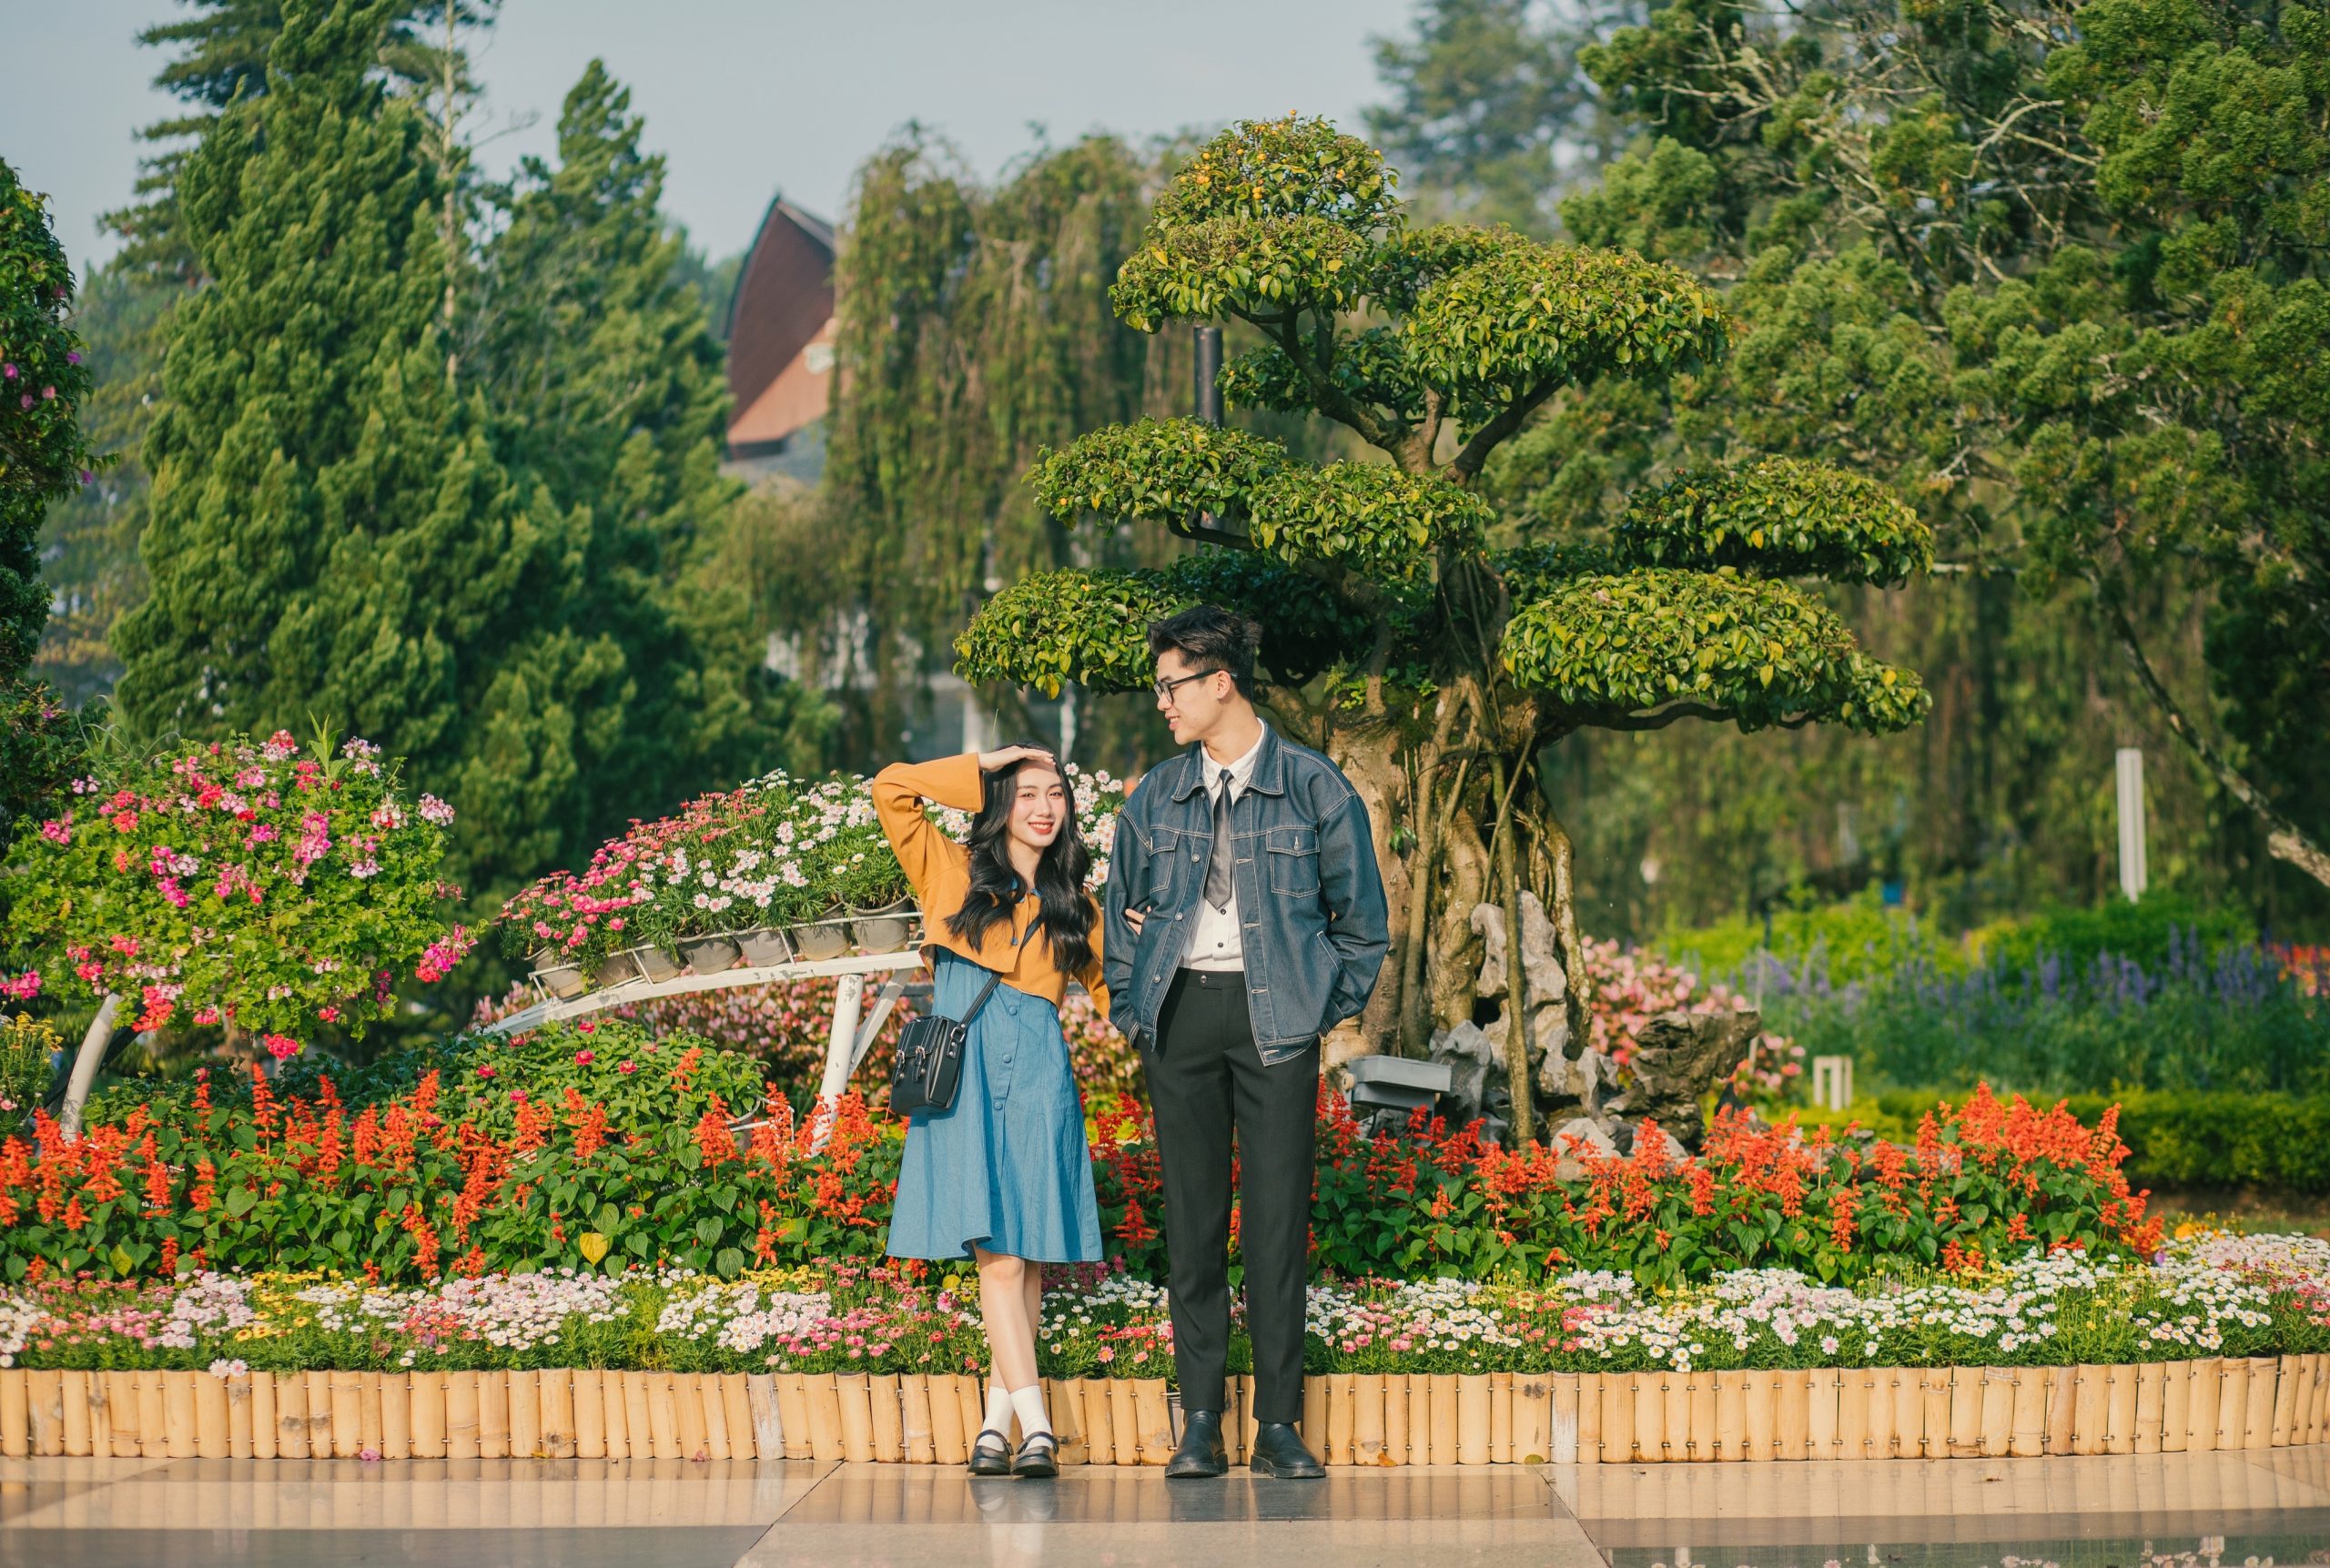 chụp ảnh cặp đôi tại vườn hoa thành phố